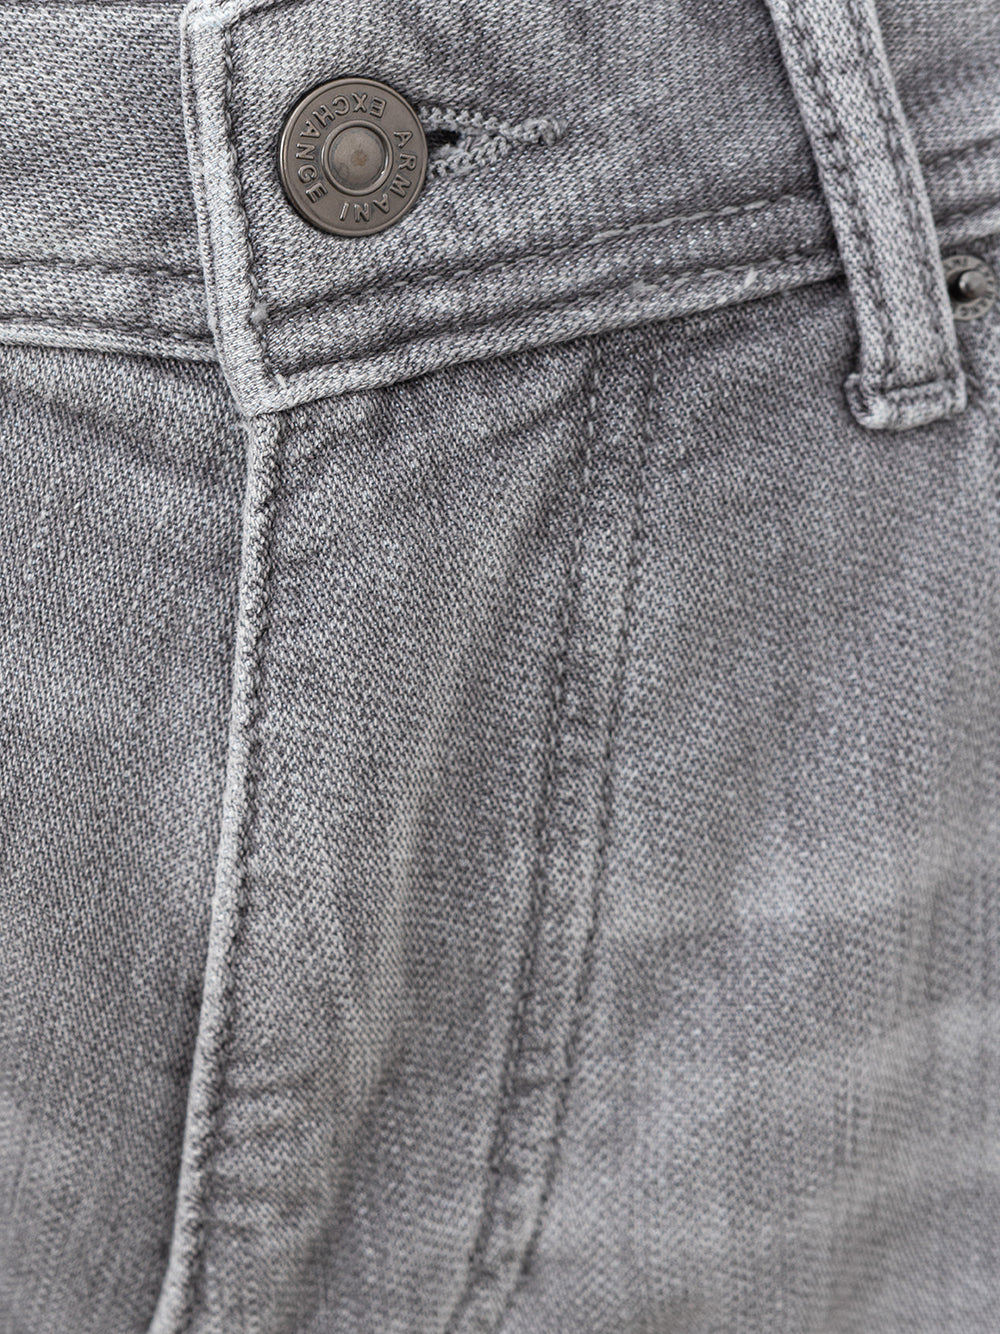 Armani Exchange five pocket gray jeans